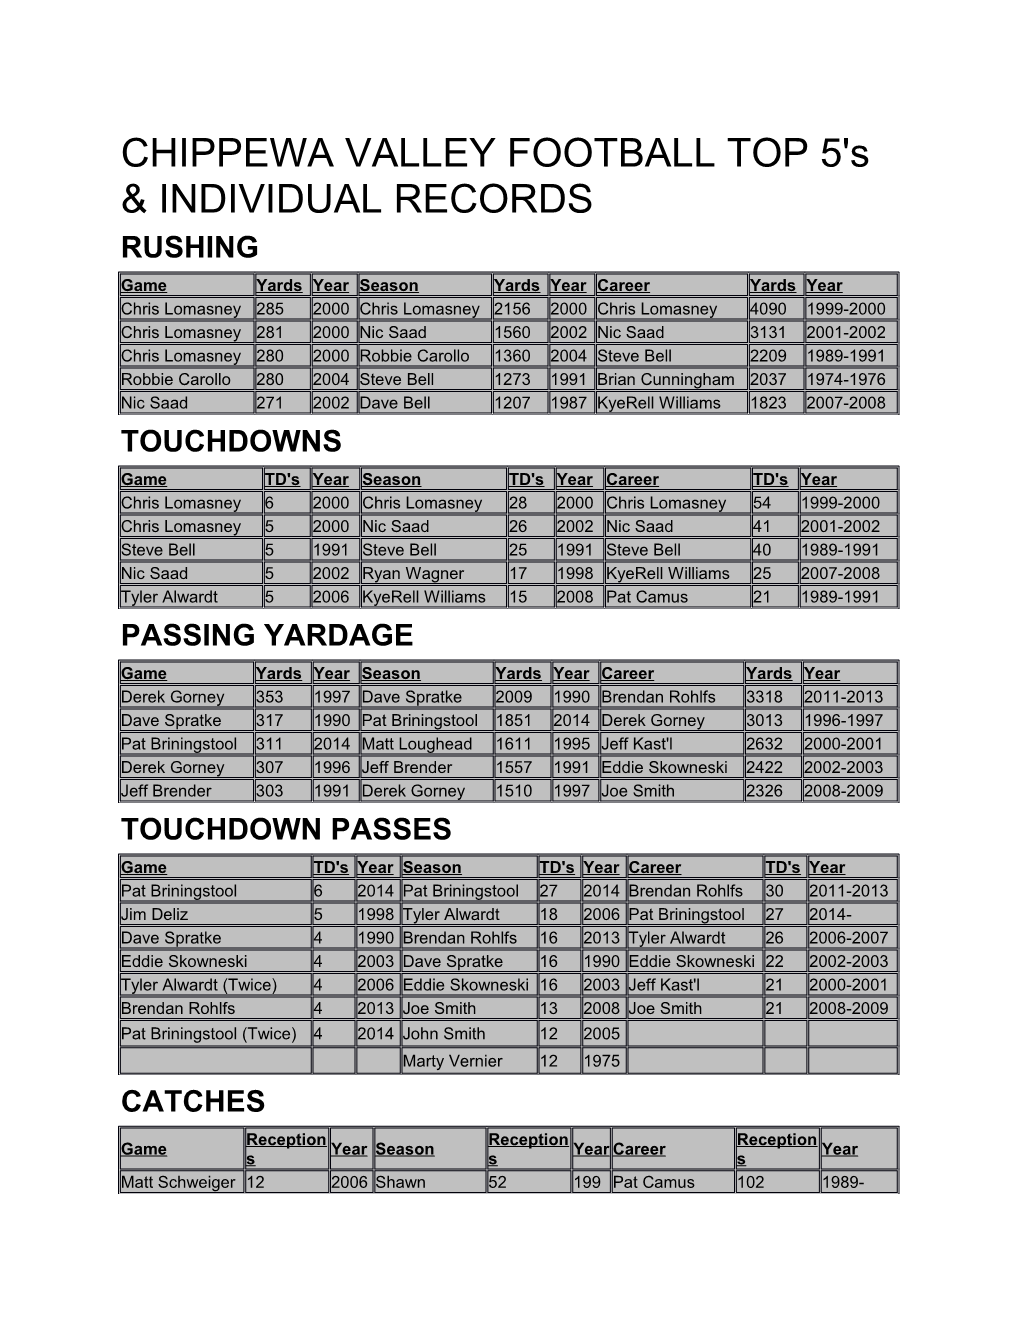 CHIPPEWA VALLEY FOOTBALL TOP 5'S & INDIVIDUAL RECORDS